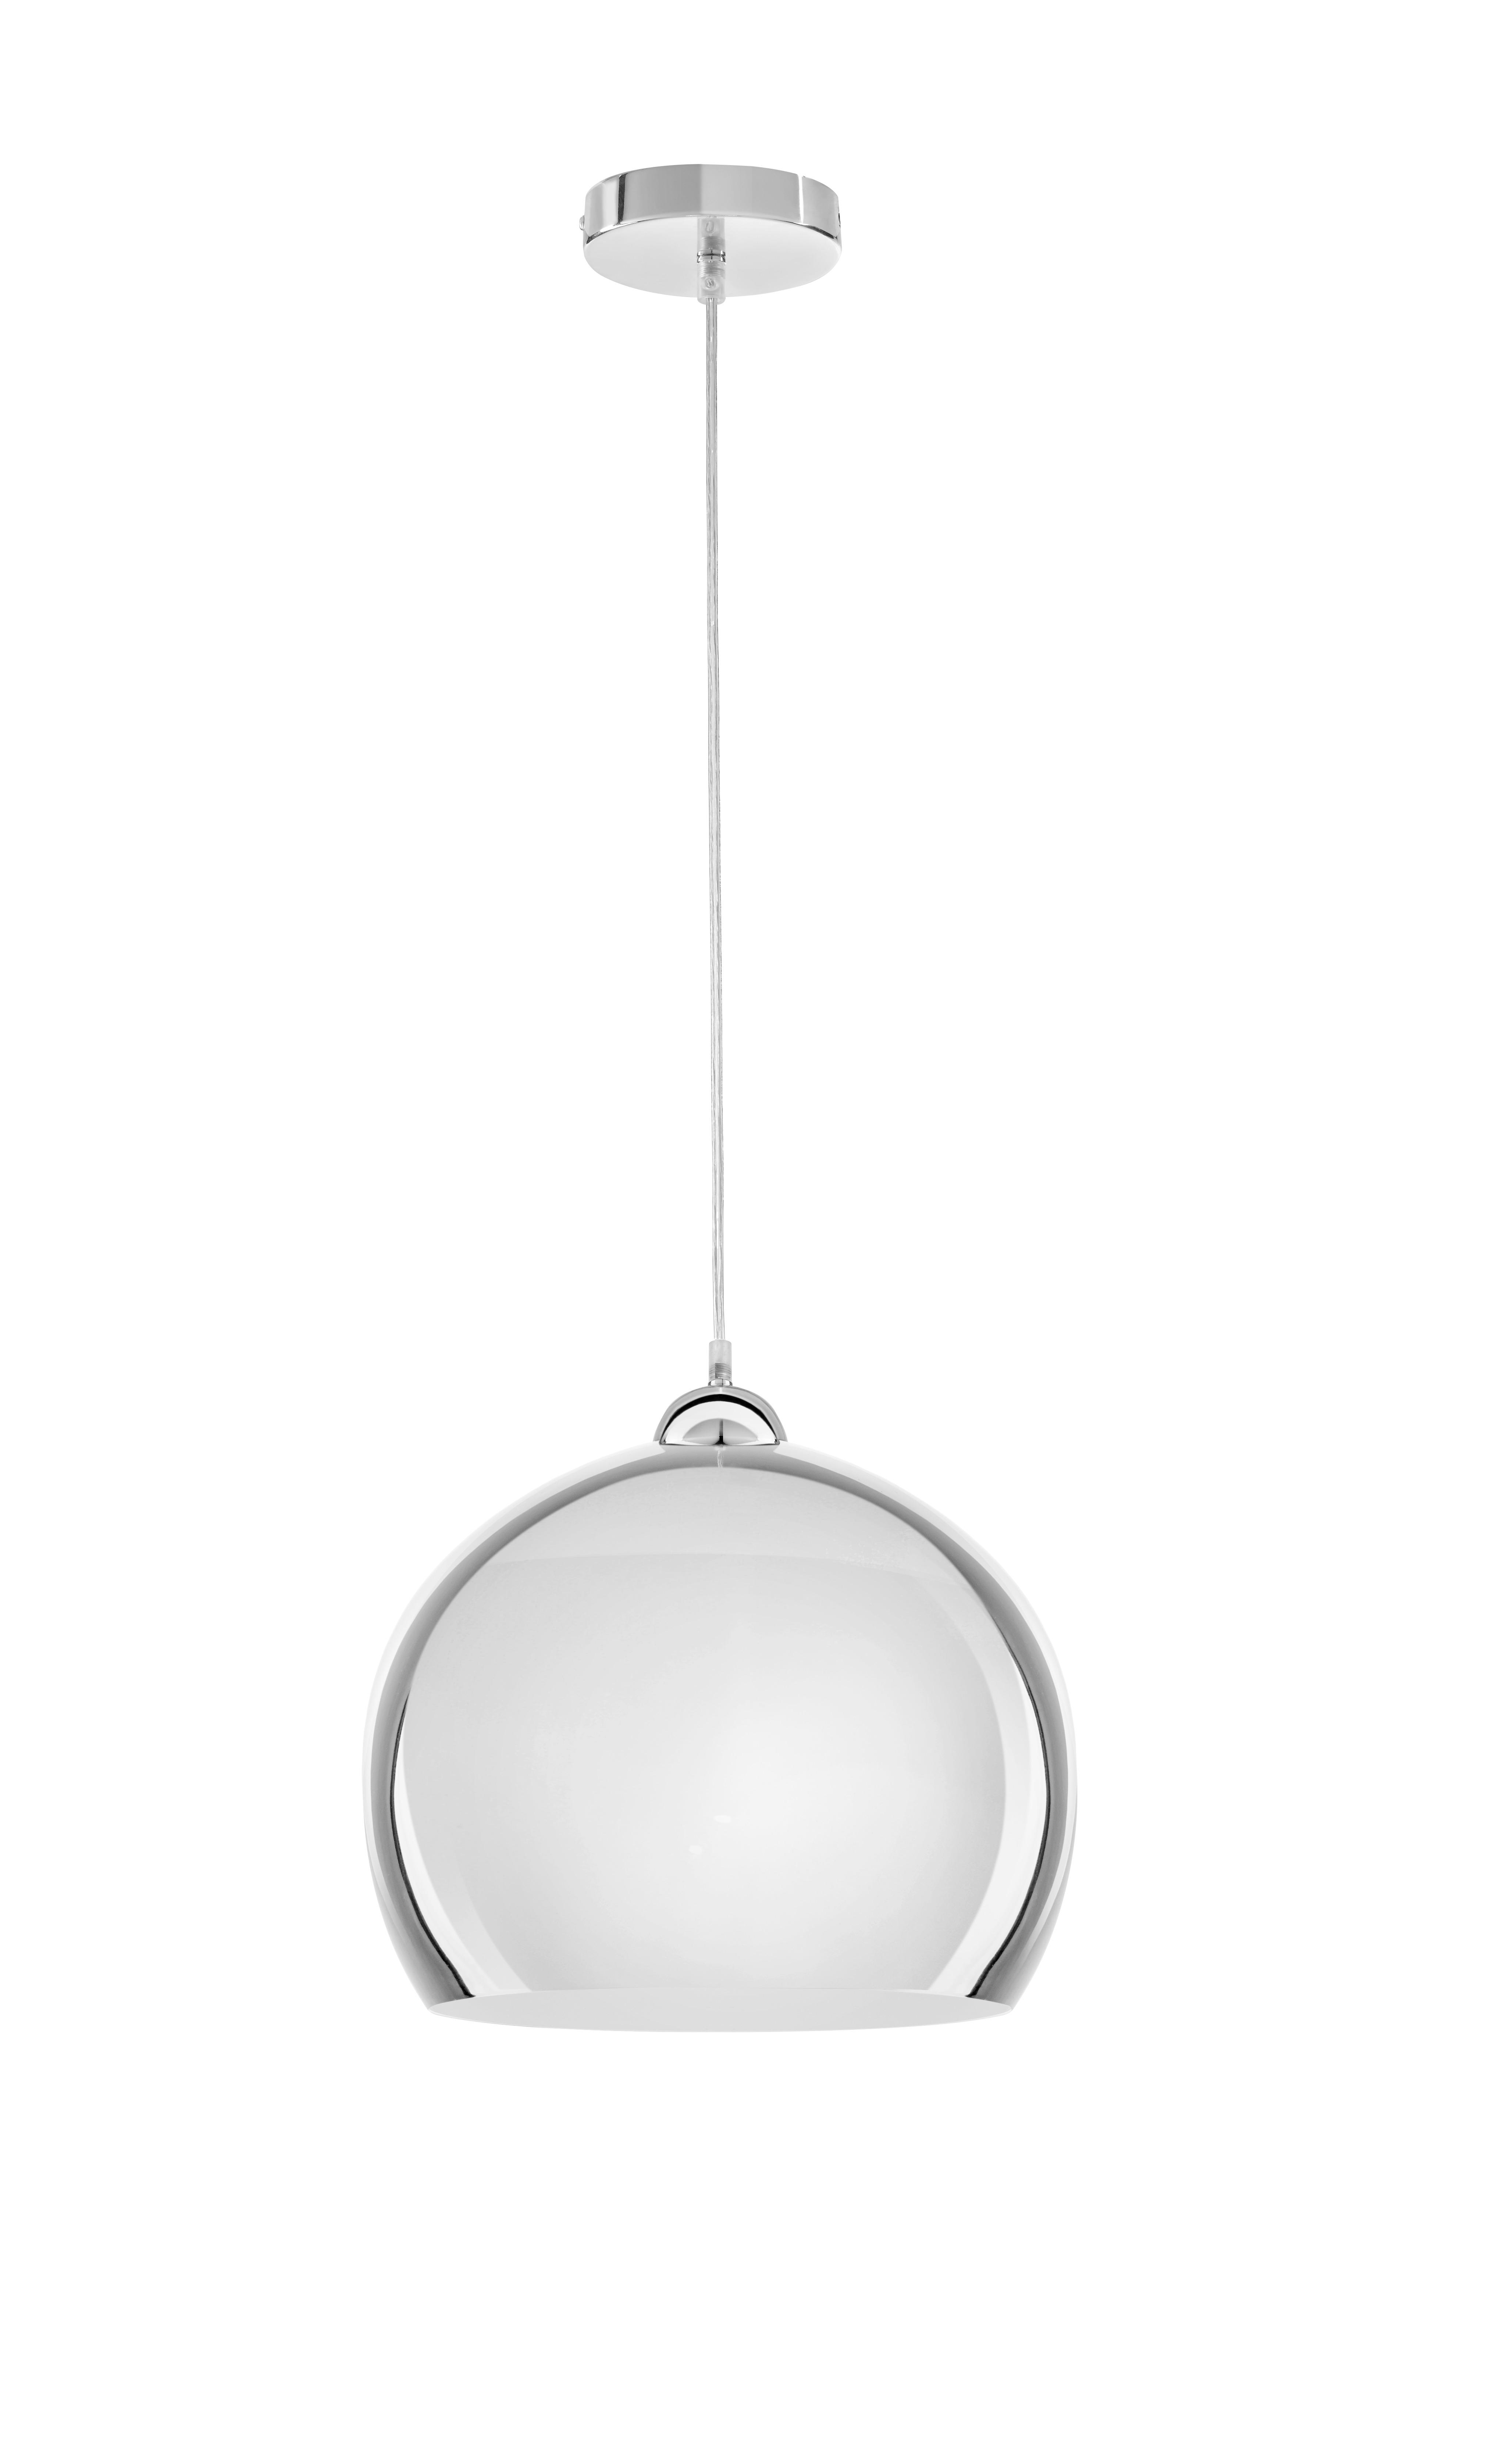 Závesná Lampa Konrad 30/120cm, 60 Watt - chrómová, Moderný, plast/sklo (30/120cm) - Modern Living